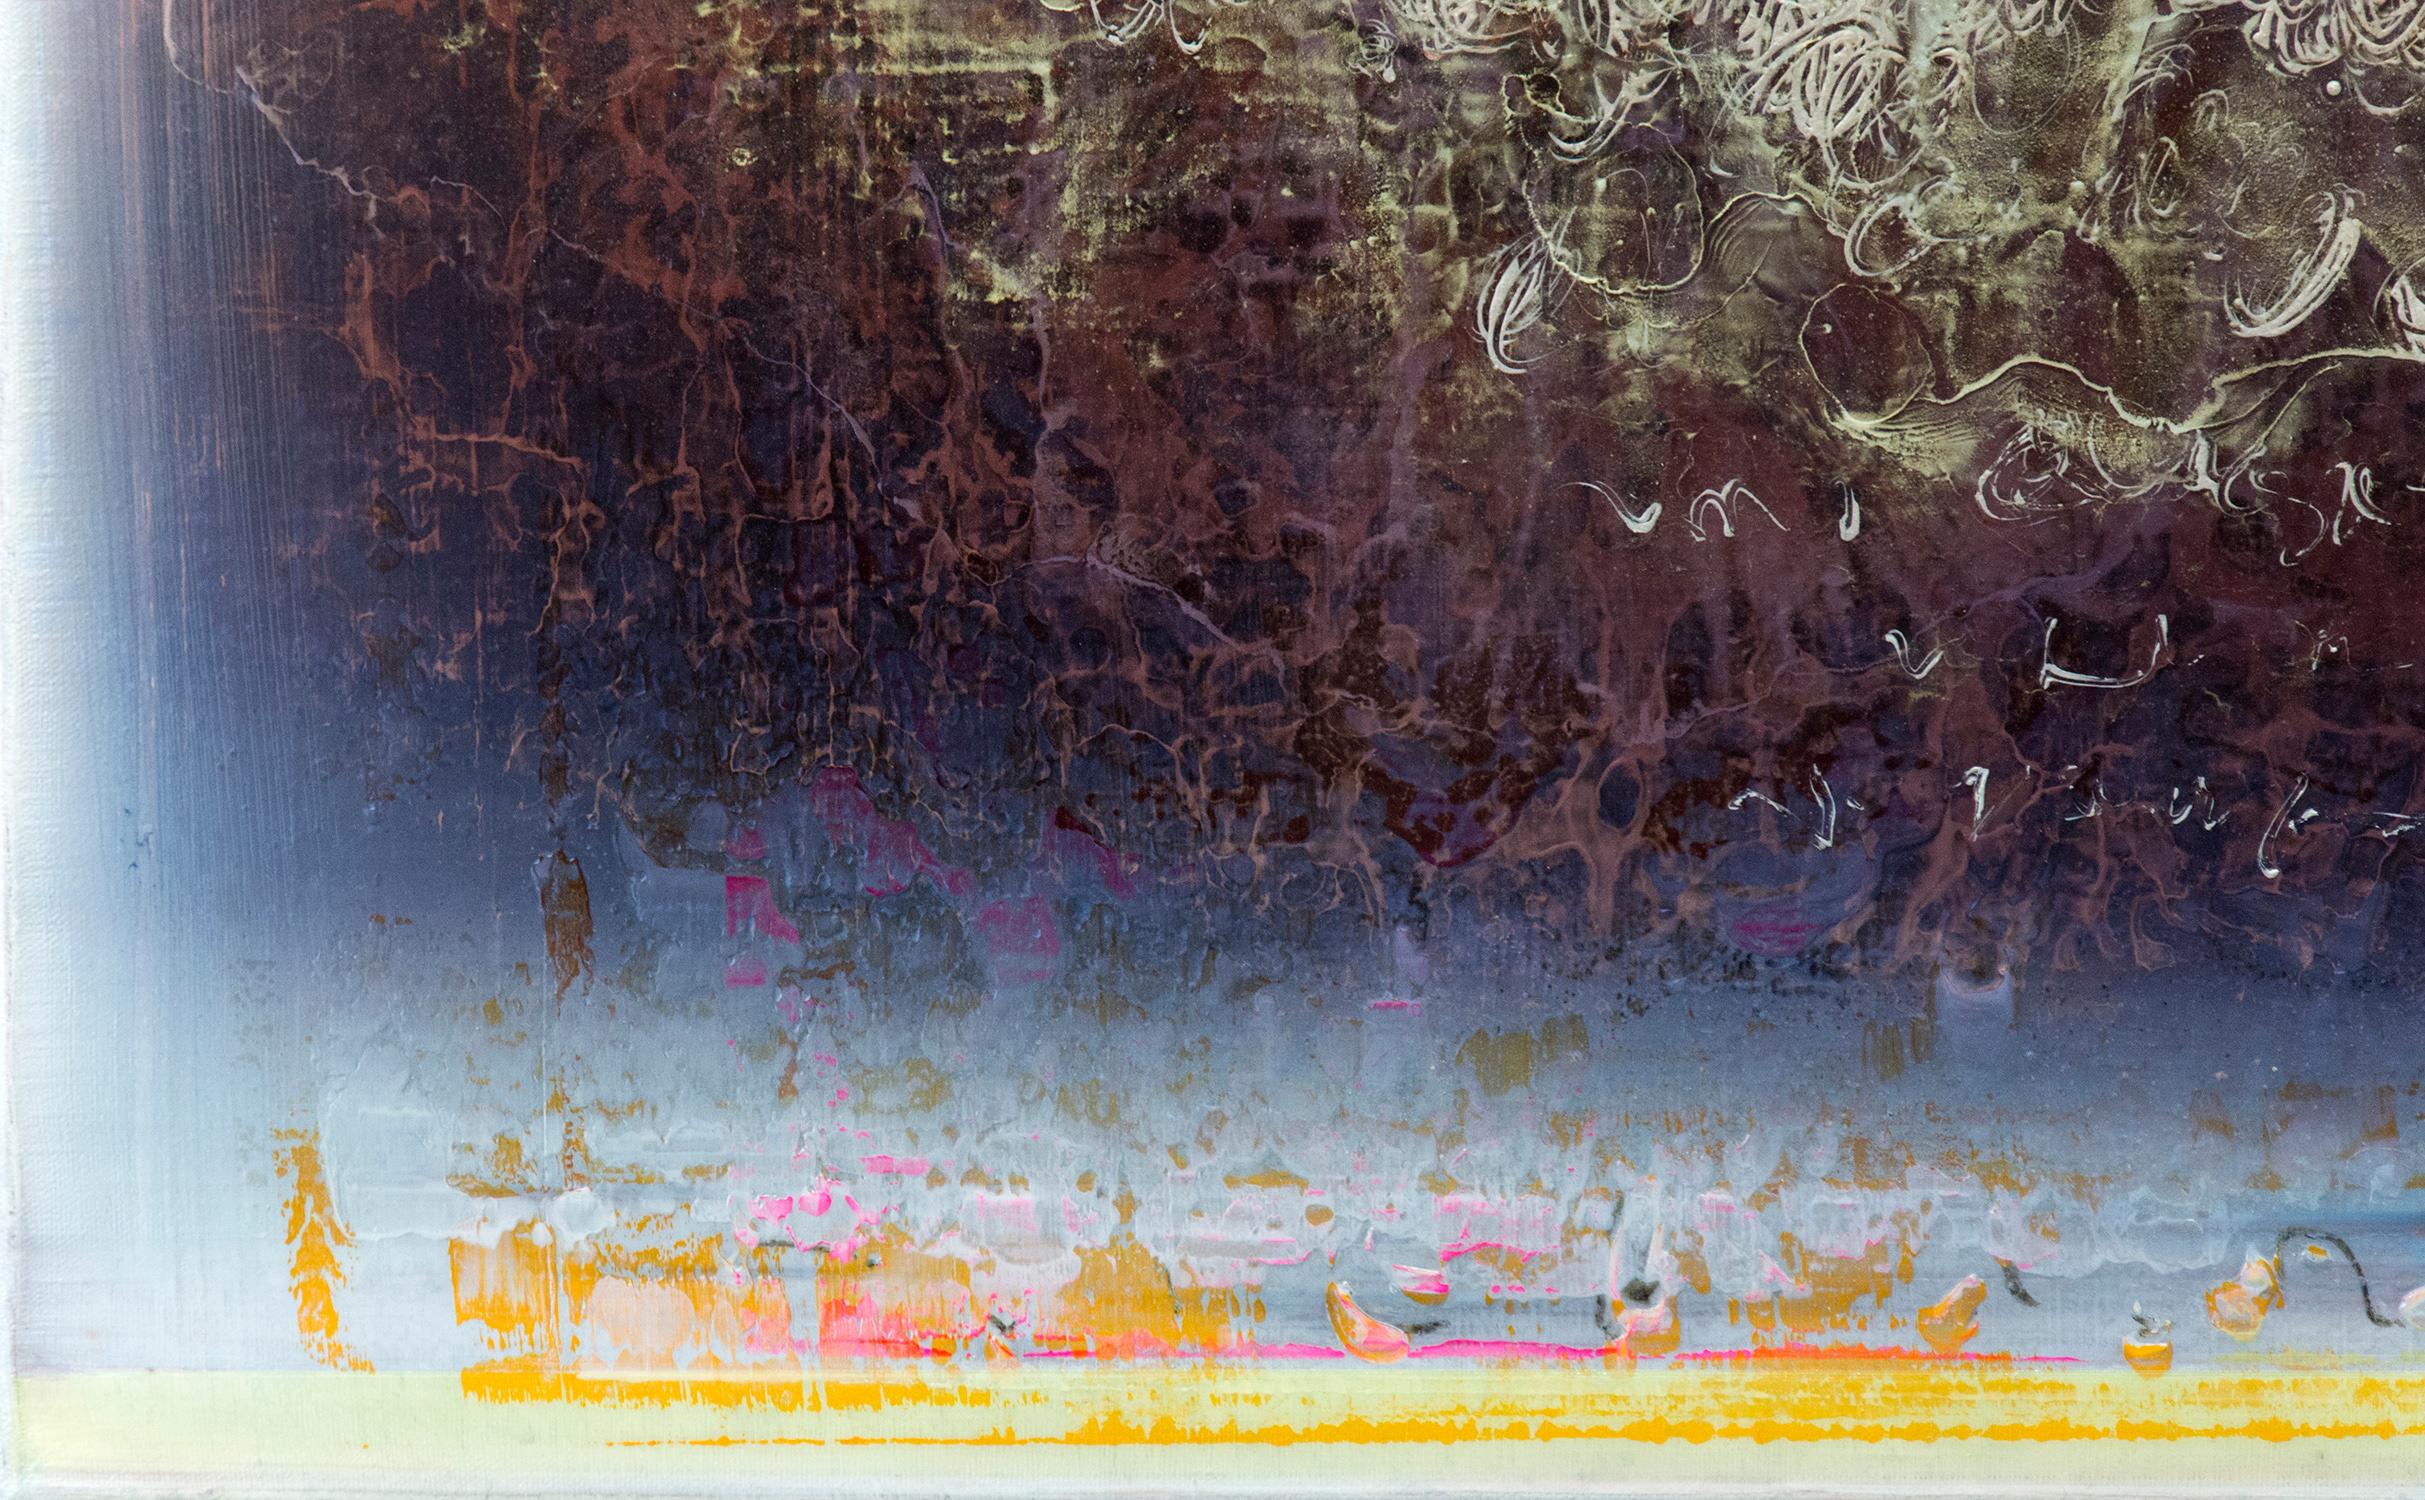 Des marques rapides de blanc, d'or et de cerise forment un nuage qui plane sur un fond indigo dans cette peinture lumineuse d'Alice Teichert. Intitulée Nocturne, l'œuvre fait référence à une composition musicale évocatrice de la nuit. L'artiste a